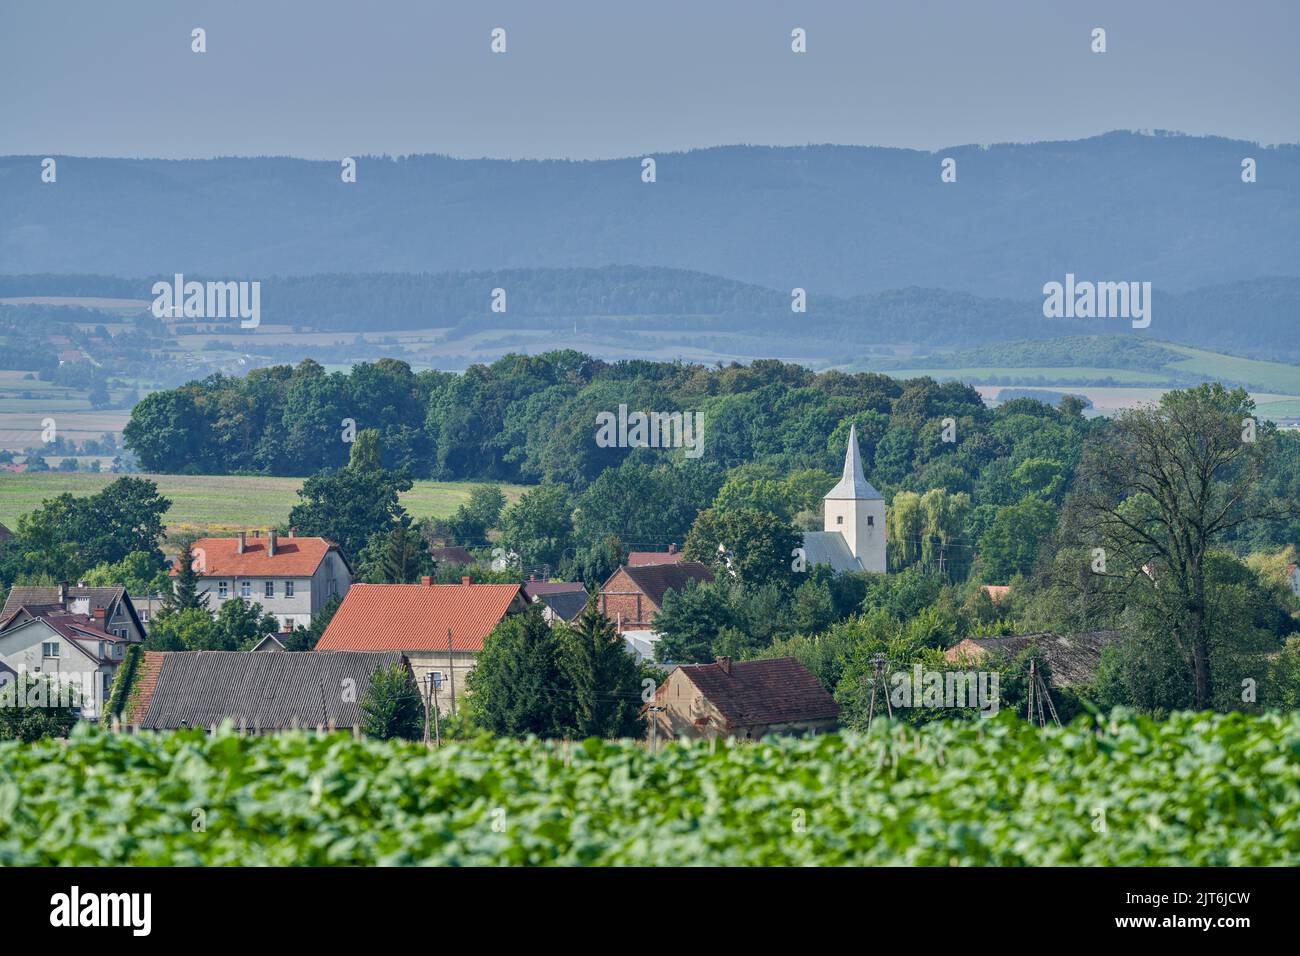 Mornig brumeux dans les champs Basse-Silésie Pologne Banque D'Images